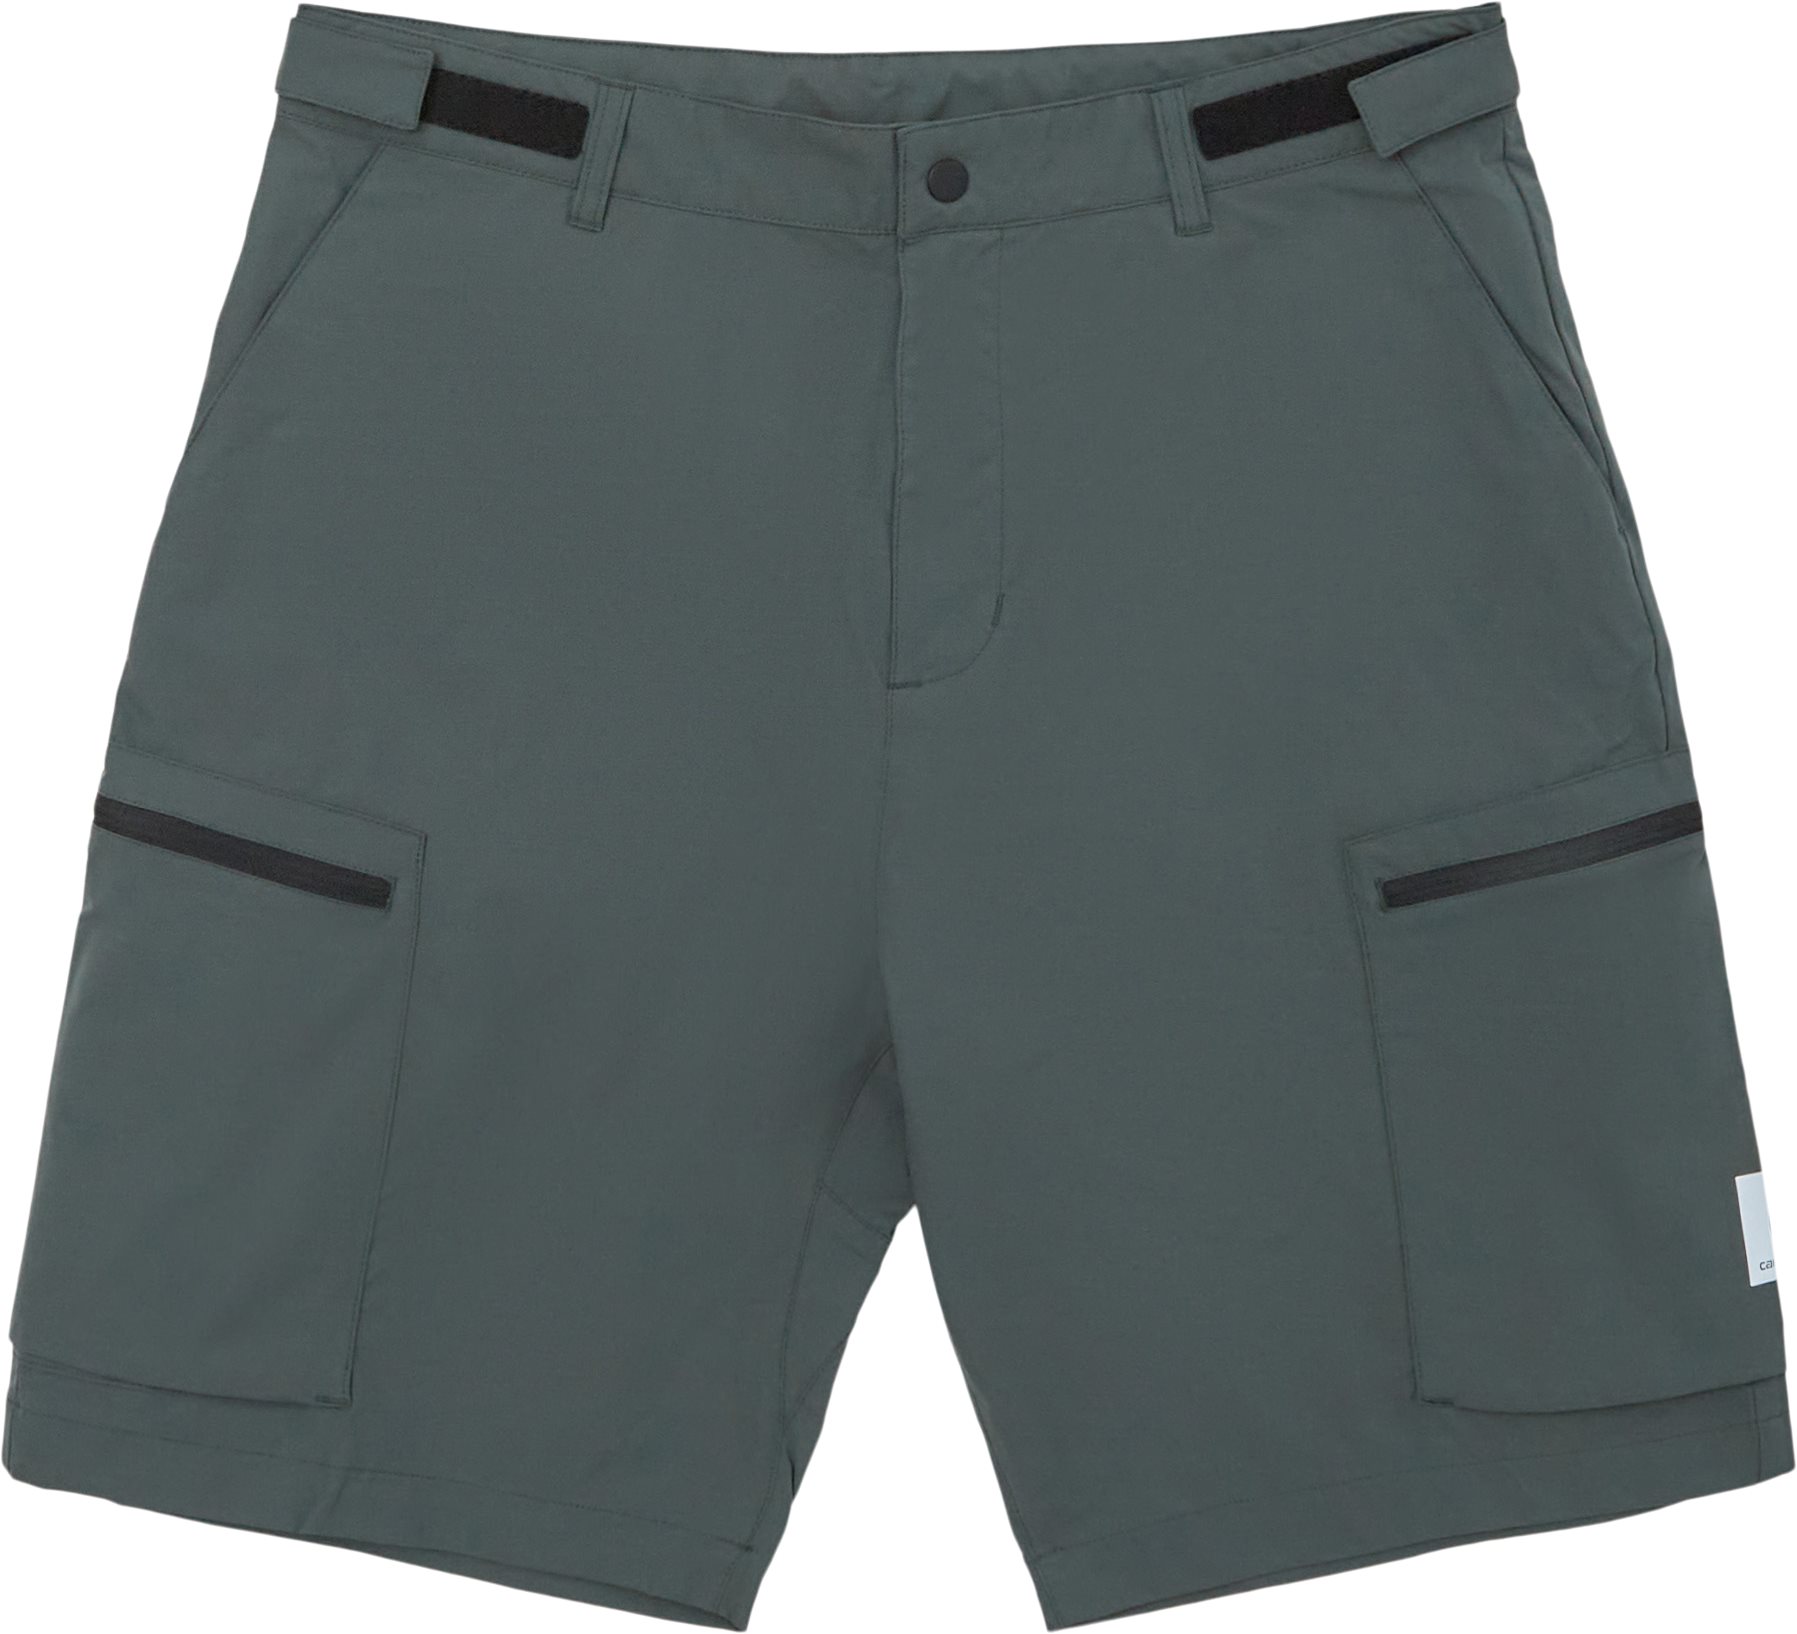 Hewitt Short I030016 - Shorts - Regular fit - Grön